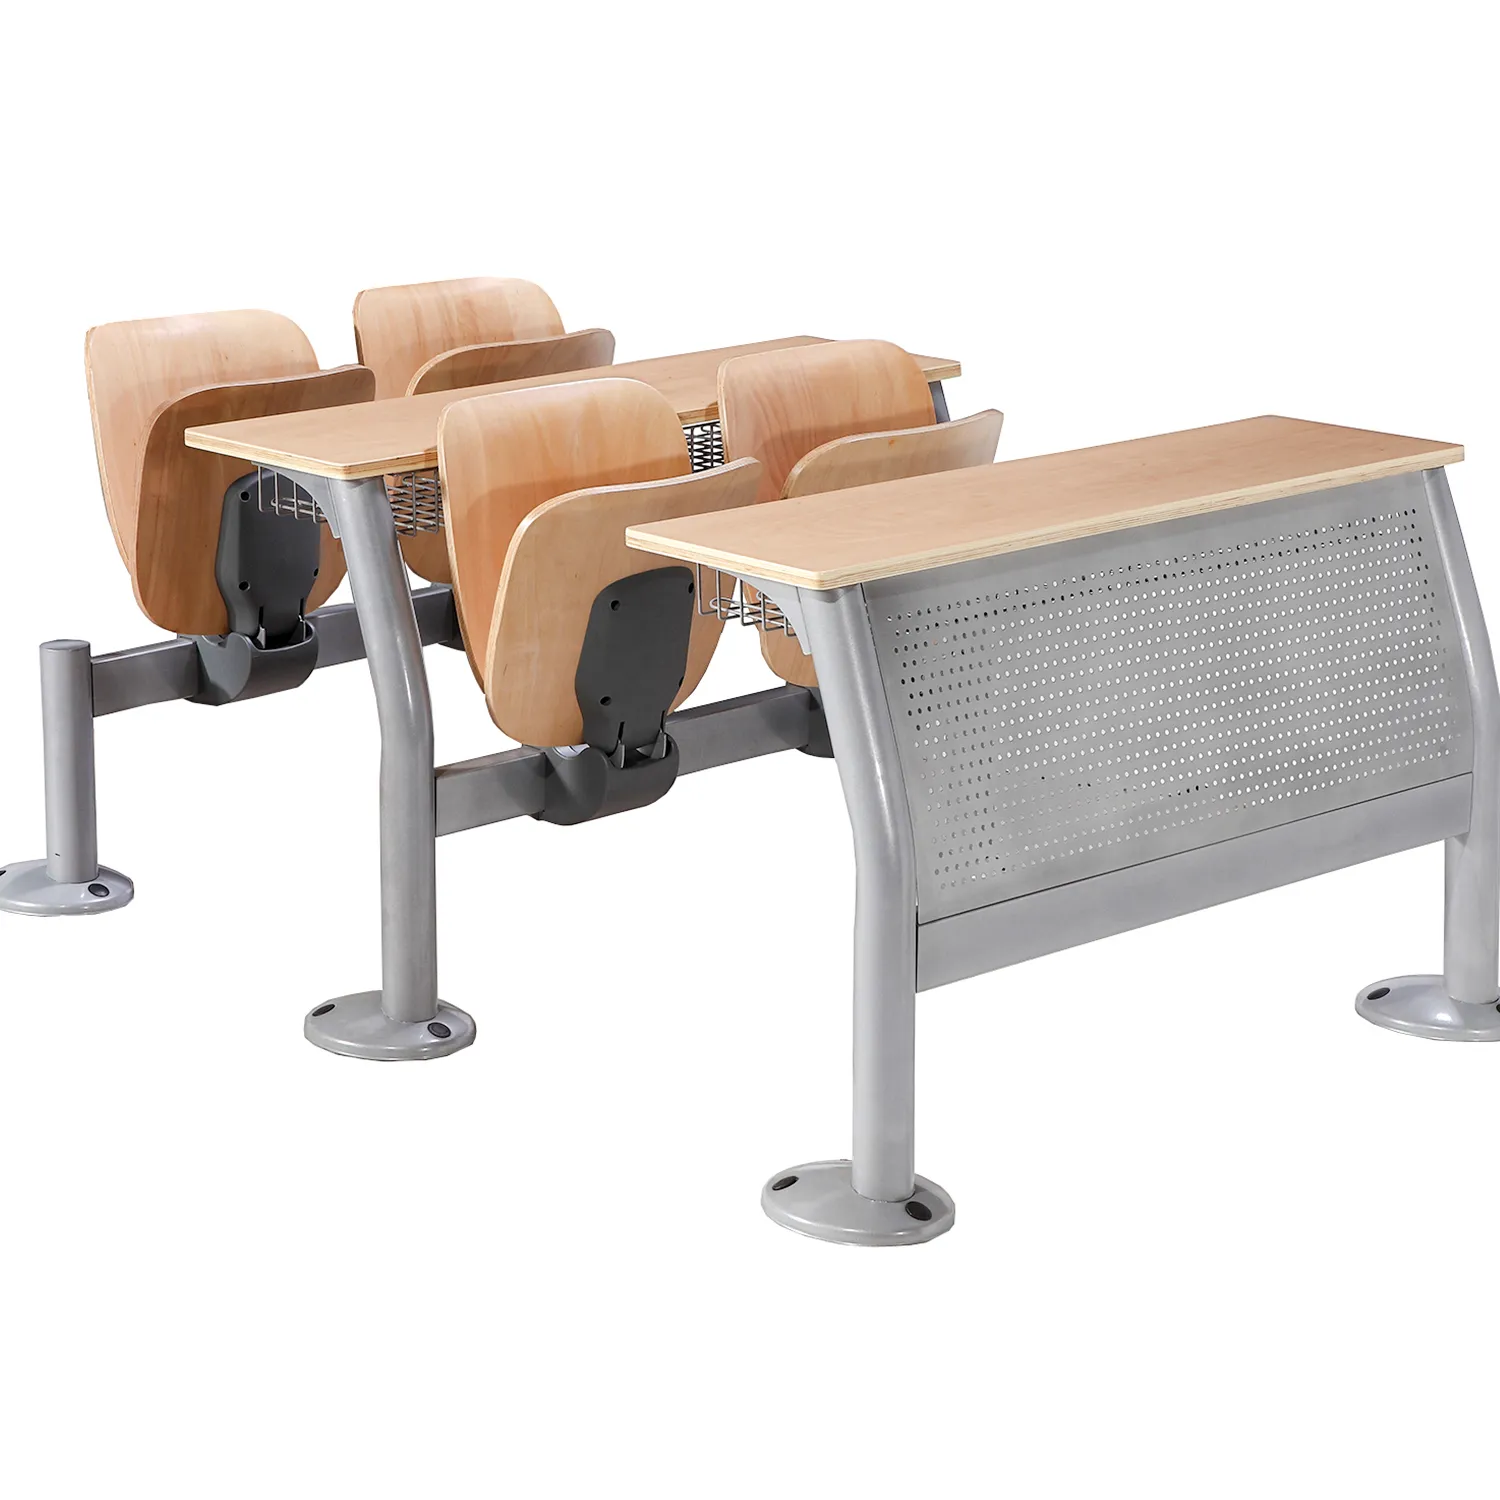 A buon mercato di mobili in acciaio in metallo gamba in aula di scuola scrivania con sedia pieghevole per la scuola e università studente di college sedia